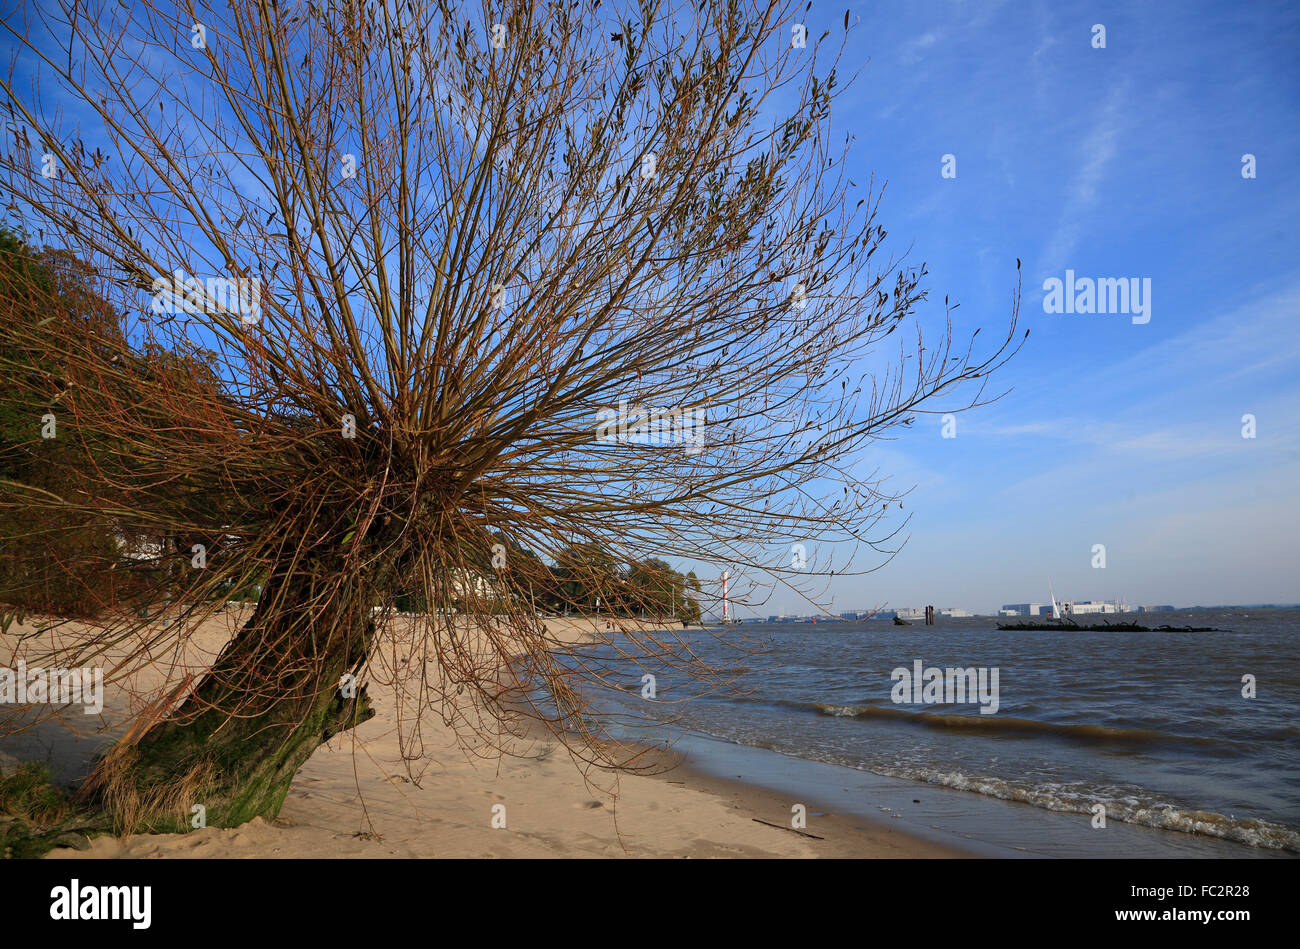 Árbol en el río Elba playa, Blankenese, Hamburgo, Alemania, Europa Foto de stock